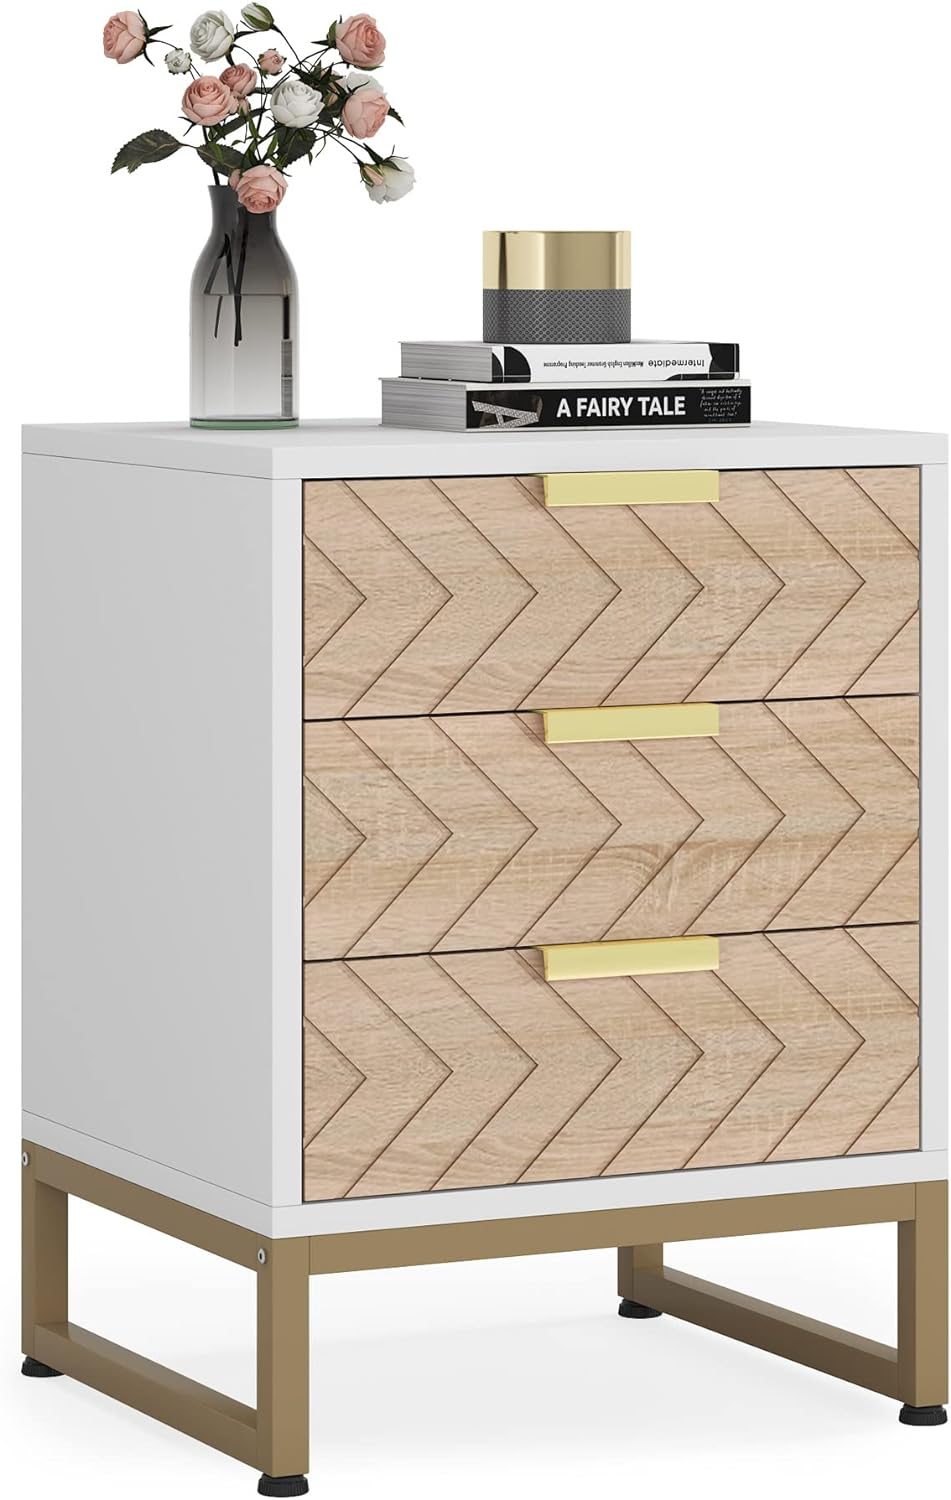 Tribesigns - Nachttisch mit 3 Schubladen, Nachttisch mit einzigartigem Zickzack Design, Beistelltisch für Schlafzimmer und Wohnzimmer, Weiß & Gold